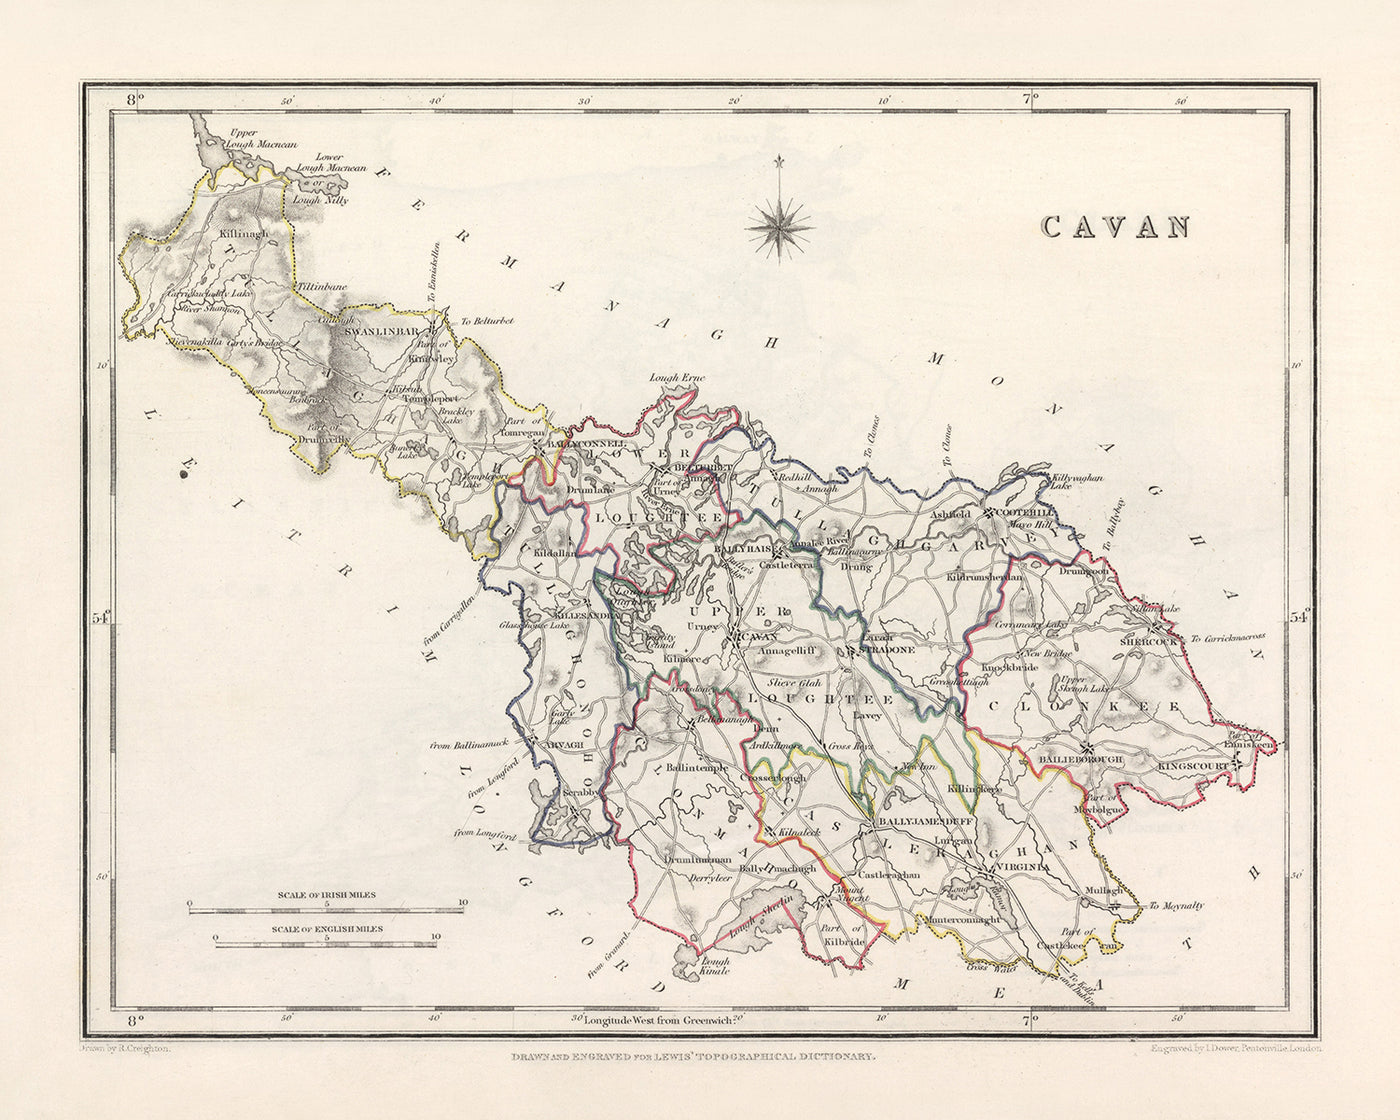 Mapa antiguo del condado de Cavan de Samuel Lewis, 1844: Belturbet, Cootehill, Bailieborough, Virginia y más